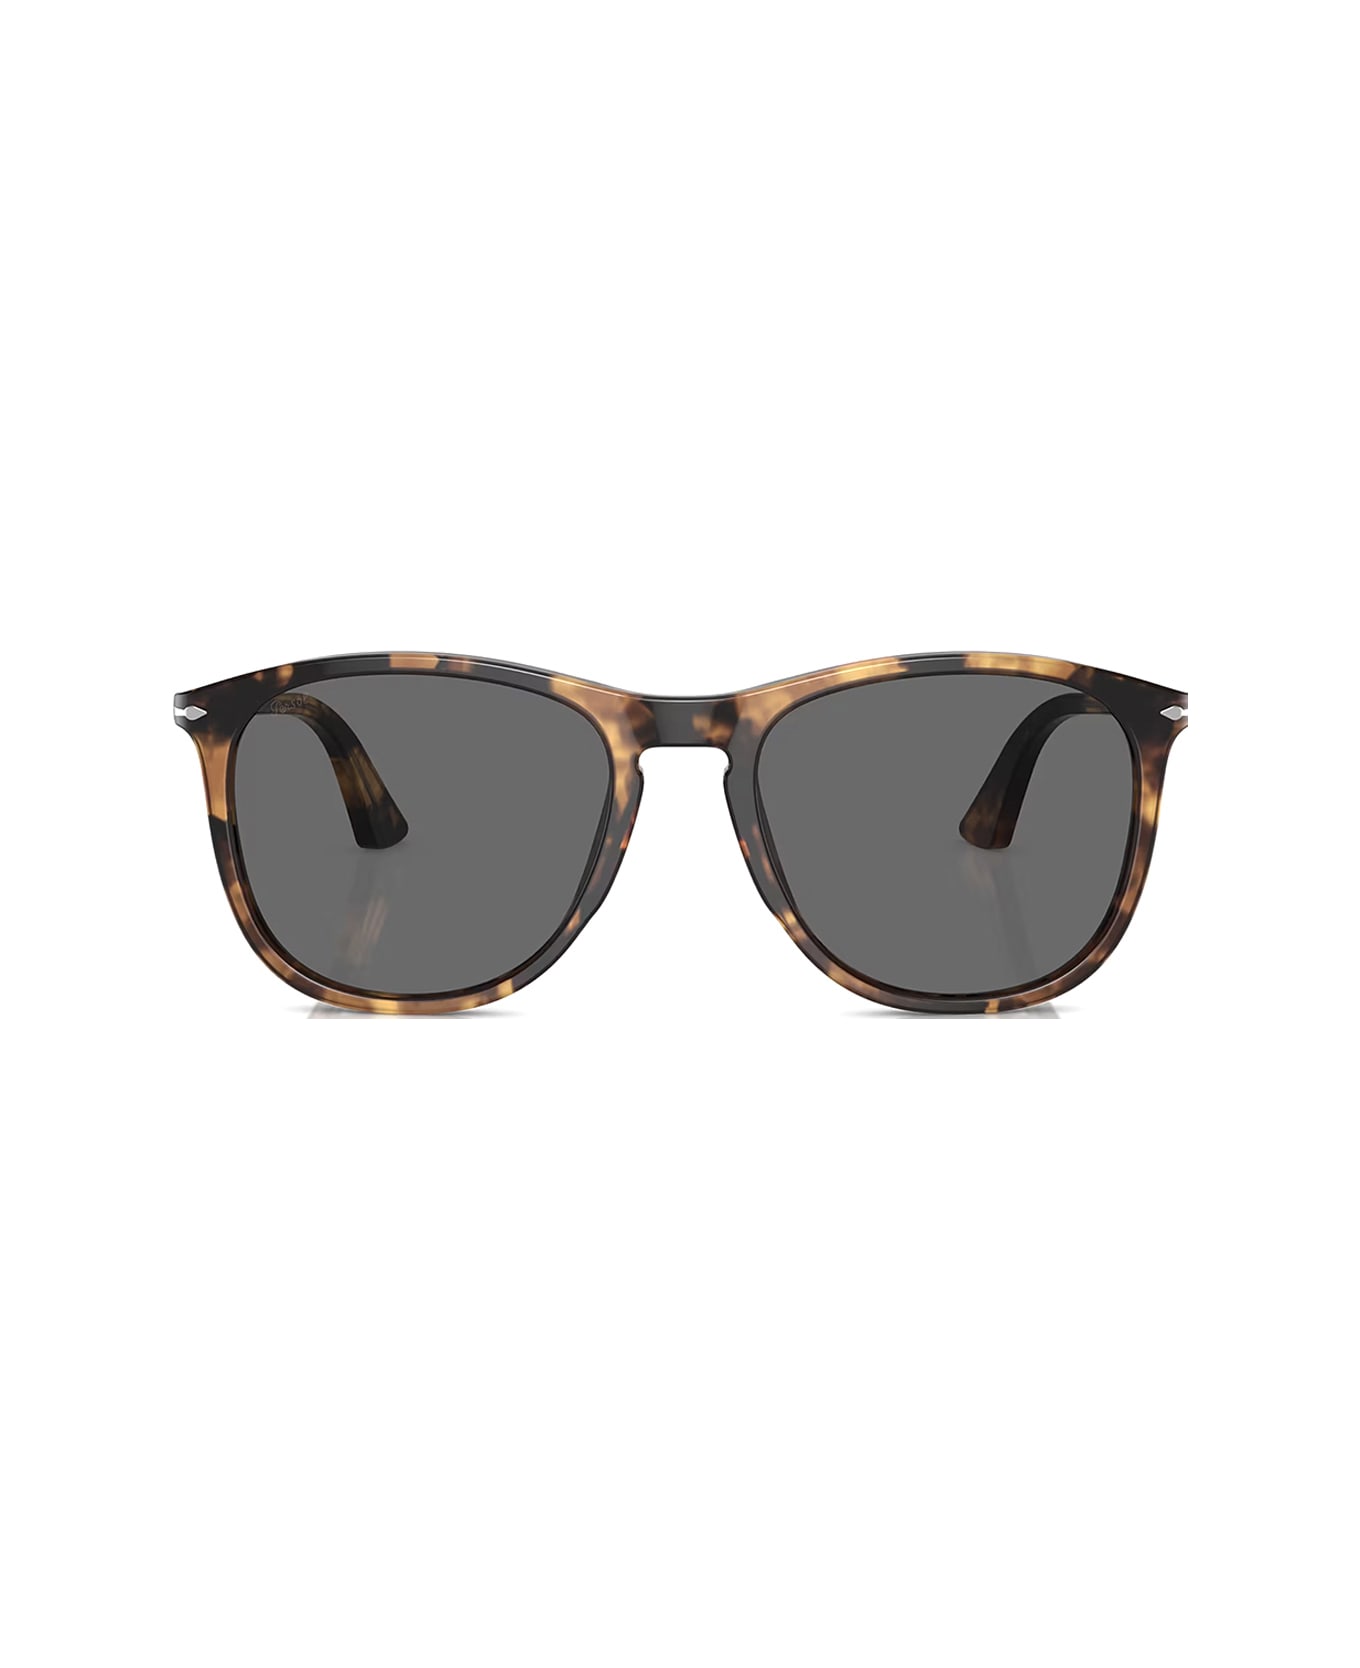 Persol Po3314s 1102b1 Sunglasses - Marrone サングラス